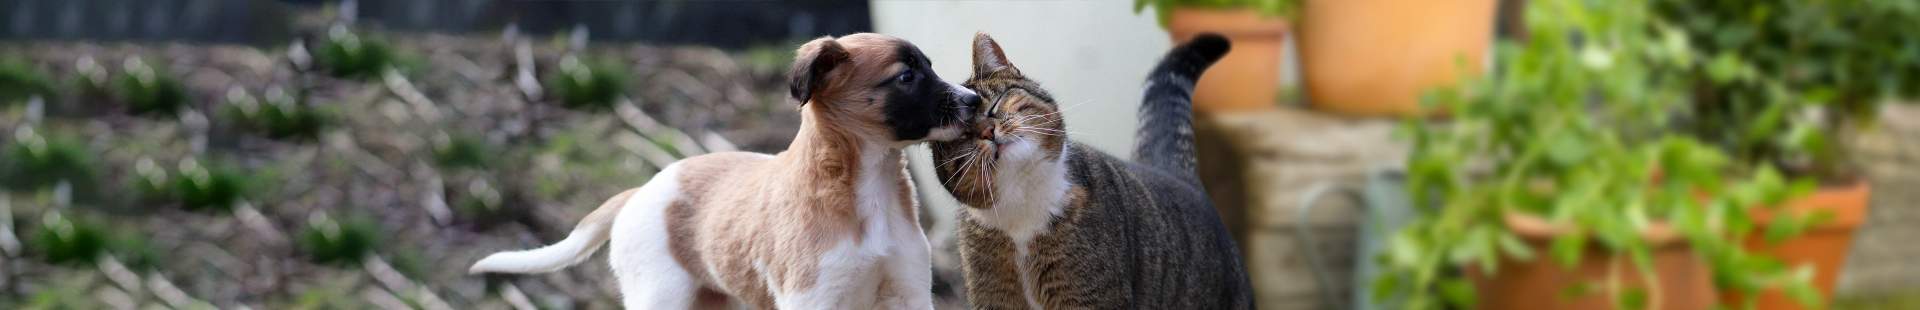 VRK Tierkrankenversicherung – Ein Hund und eine Katze im Garten.